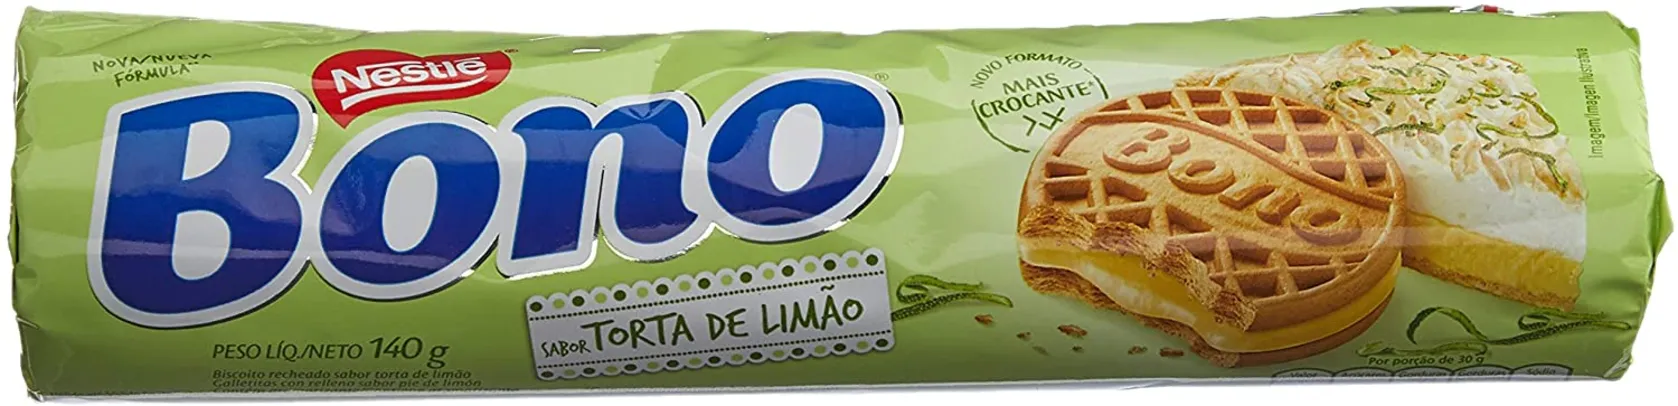 [PRIME] Biscoito, Torta de Limão, Bono, 140g | R$: 1,92